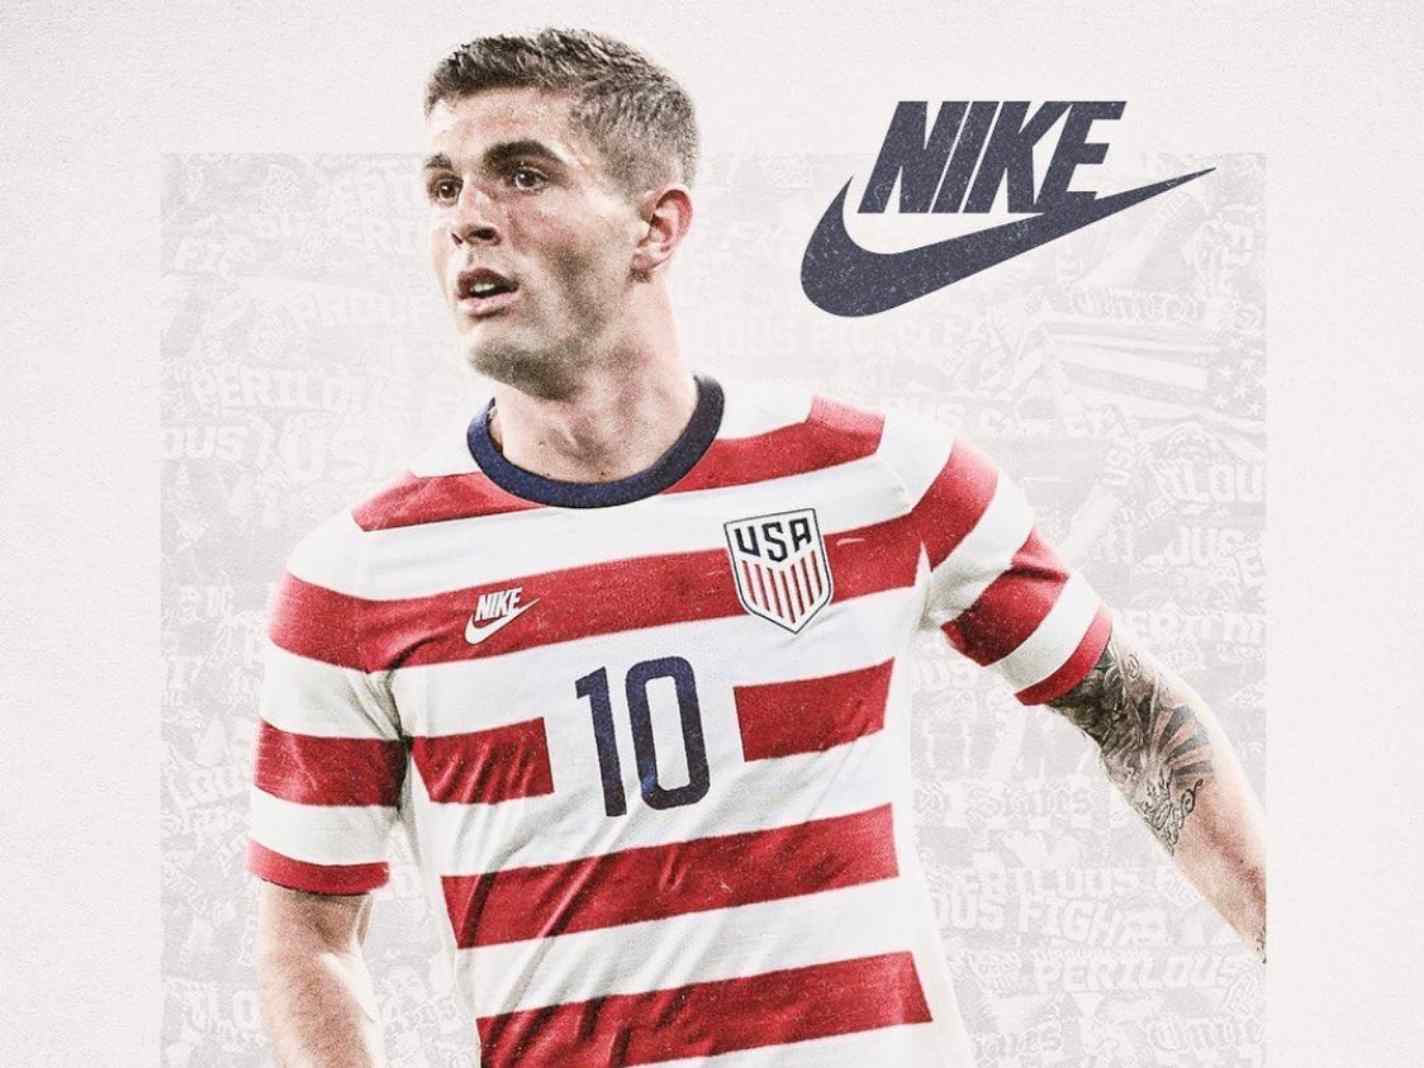 USMNT fans urge Nike to bring back ‘Waldo’ kit for 2022 World Cup